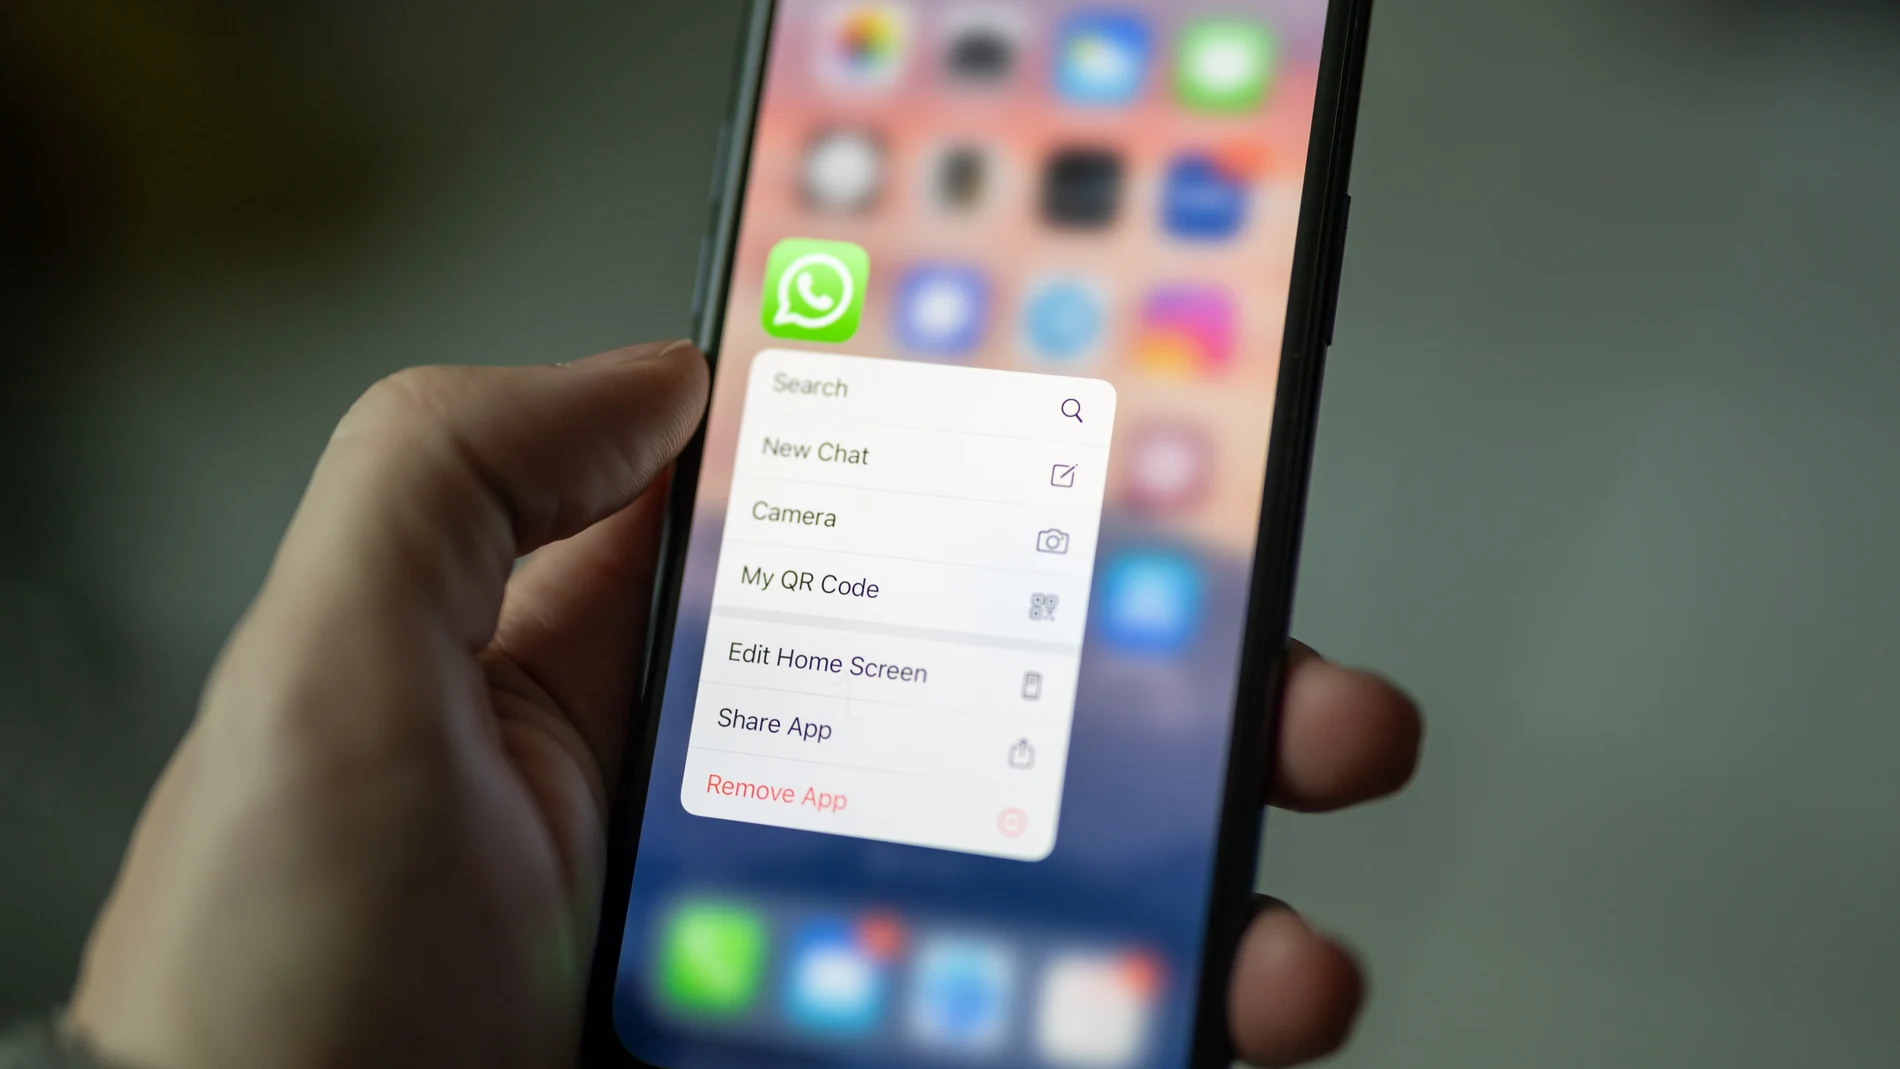 Puedes tener un segundo WhatsApp en tu móvil sin necesidad de contratar otra línea de teléfono con el operador.